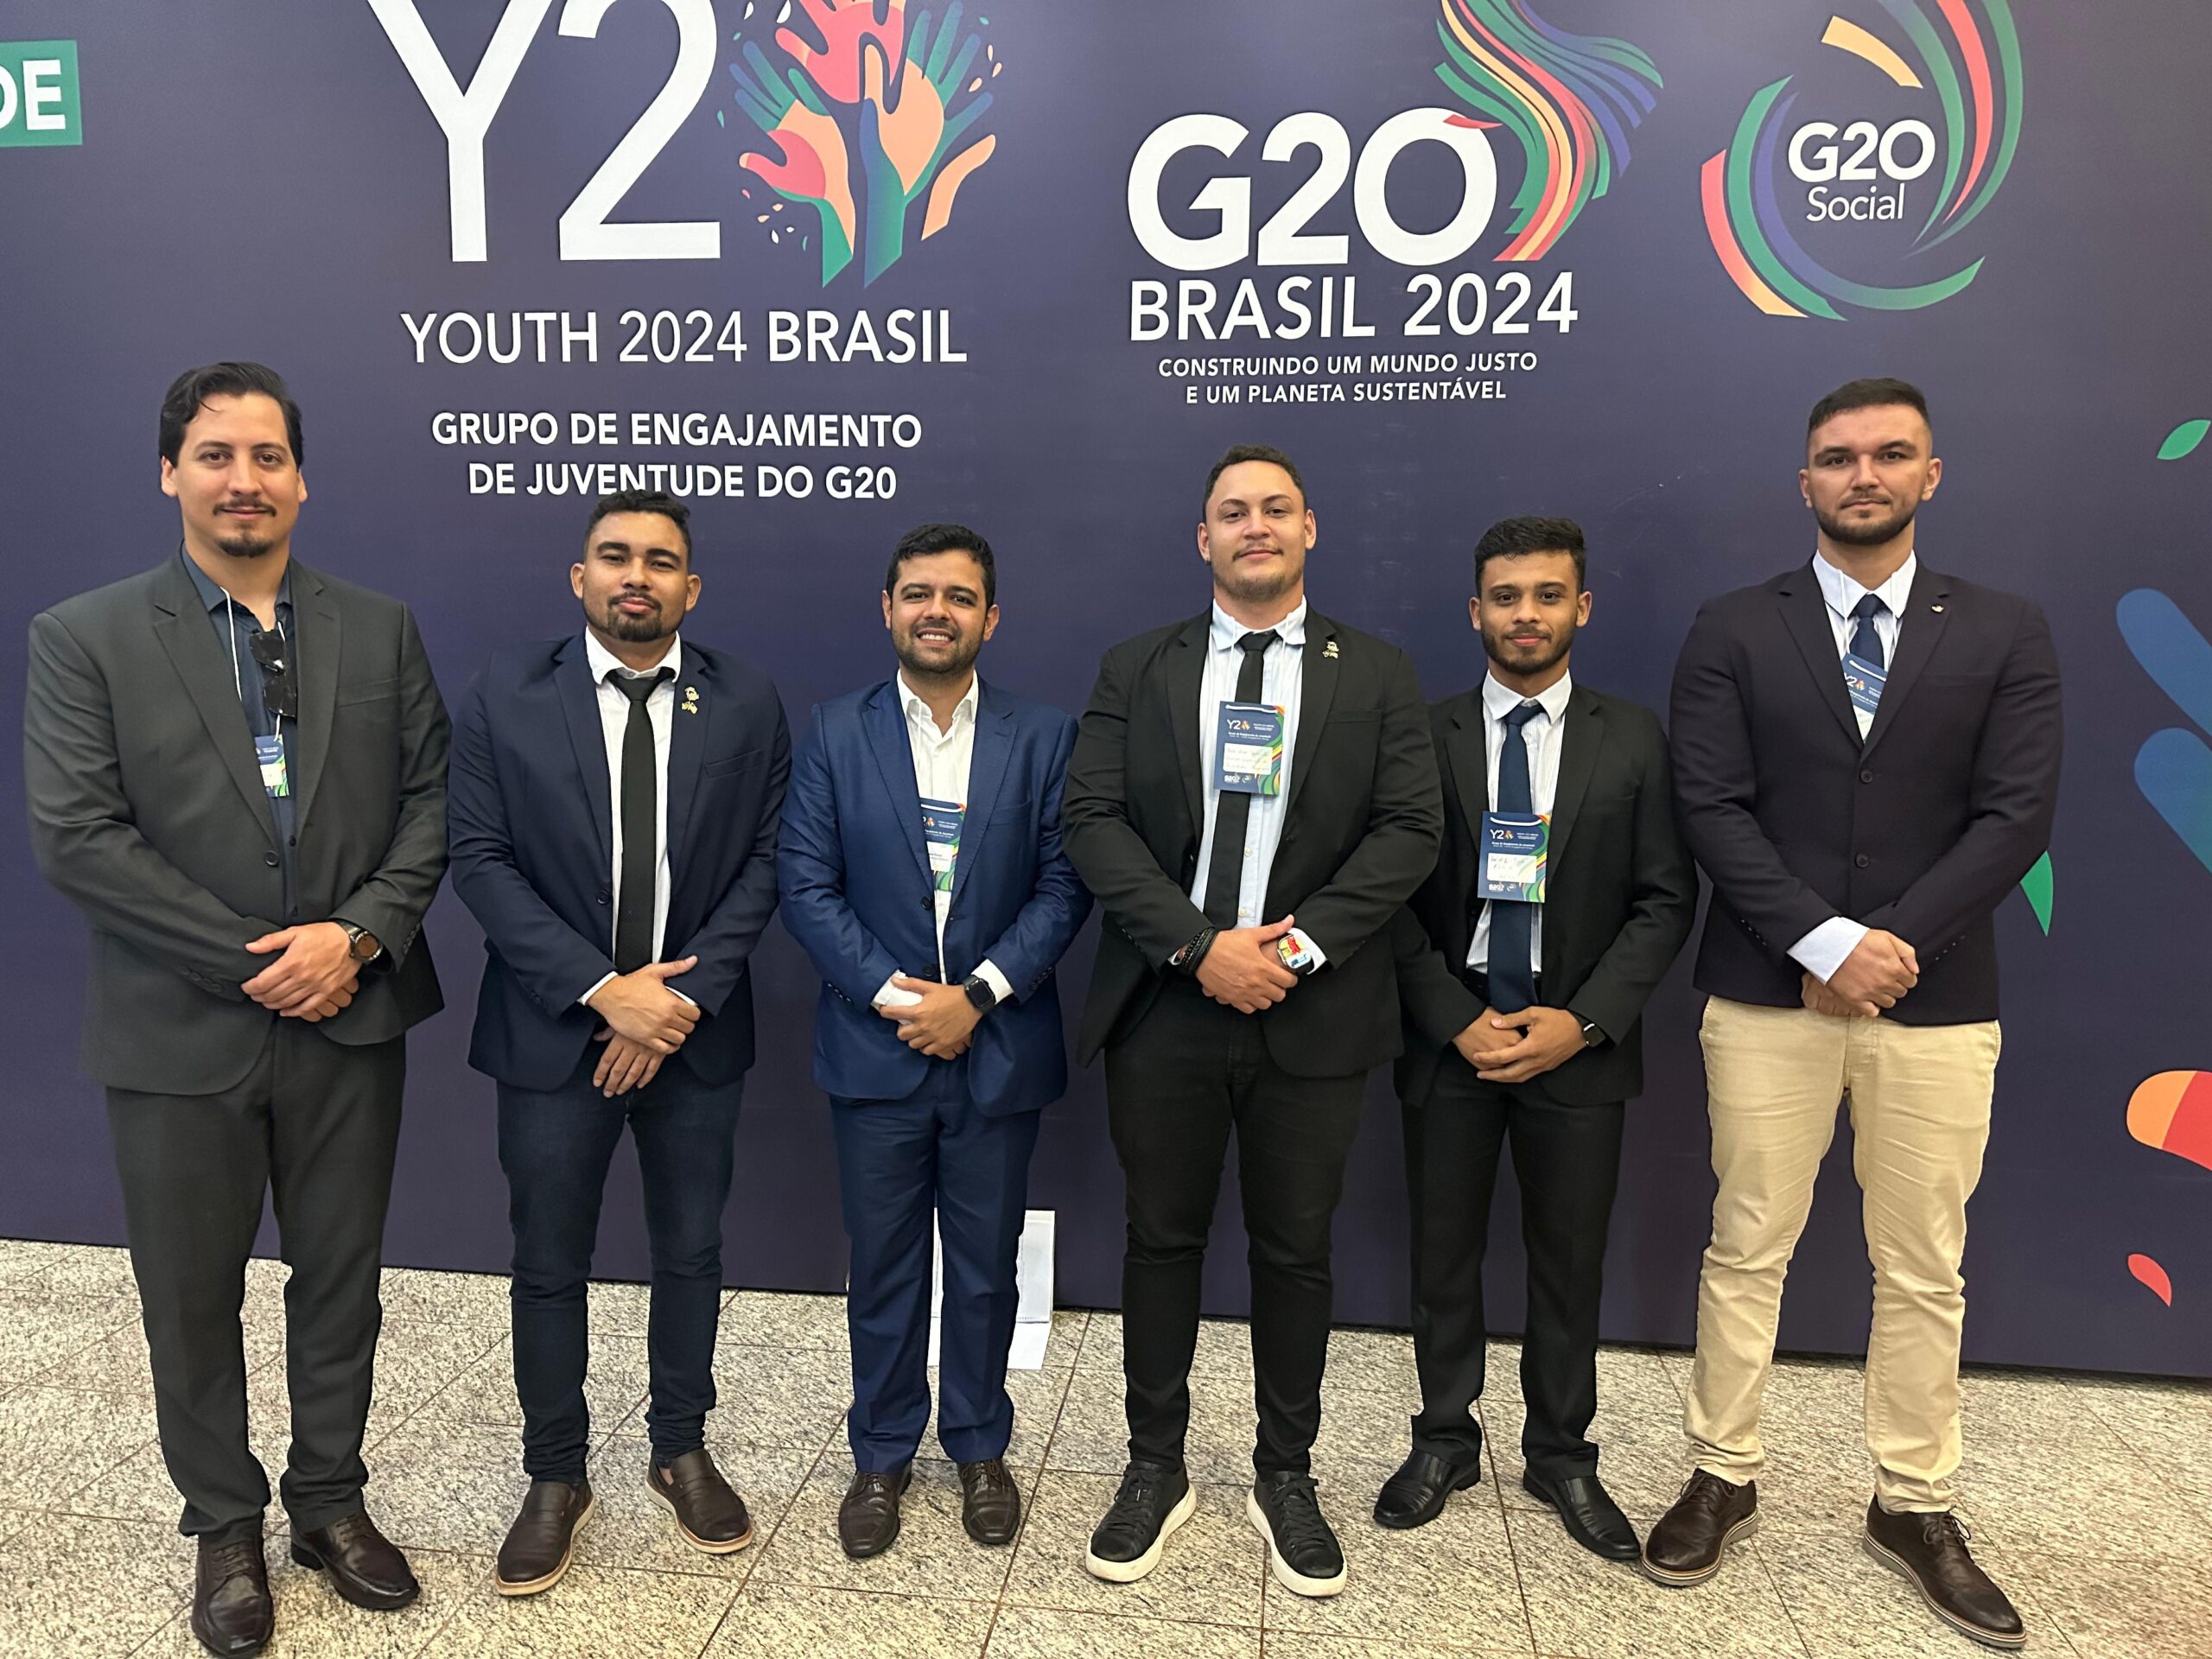  Representantes do Tocantins participaram no mês de março, do lançamento oficial do Y20, grupo oficial de engajamento de Juventude do G20 que, pela primeira vez na história, é liderado pelo Brasil - Foto: Seju / Governo do Tocantins. 